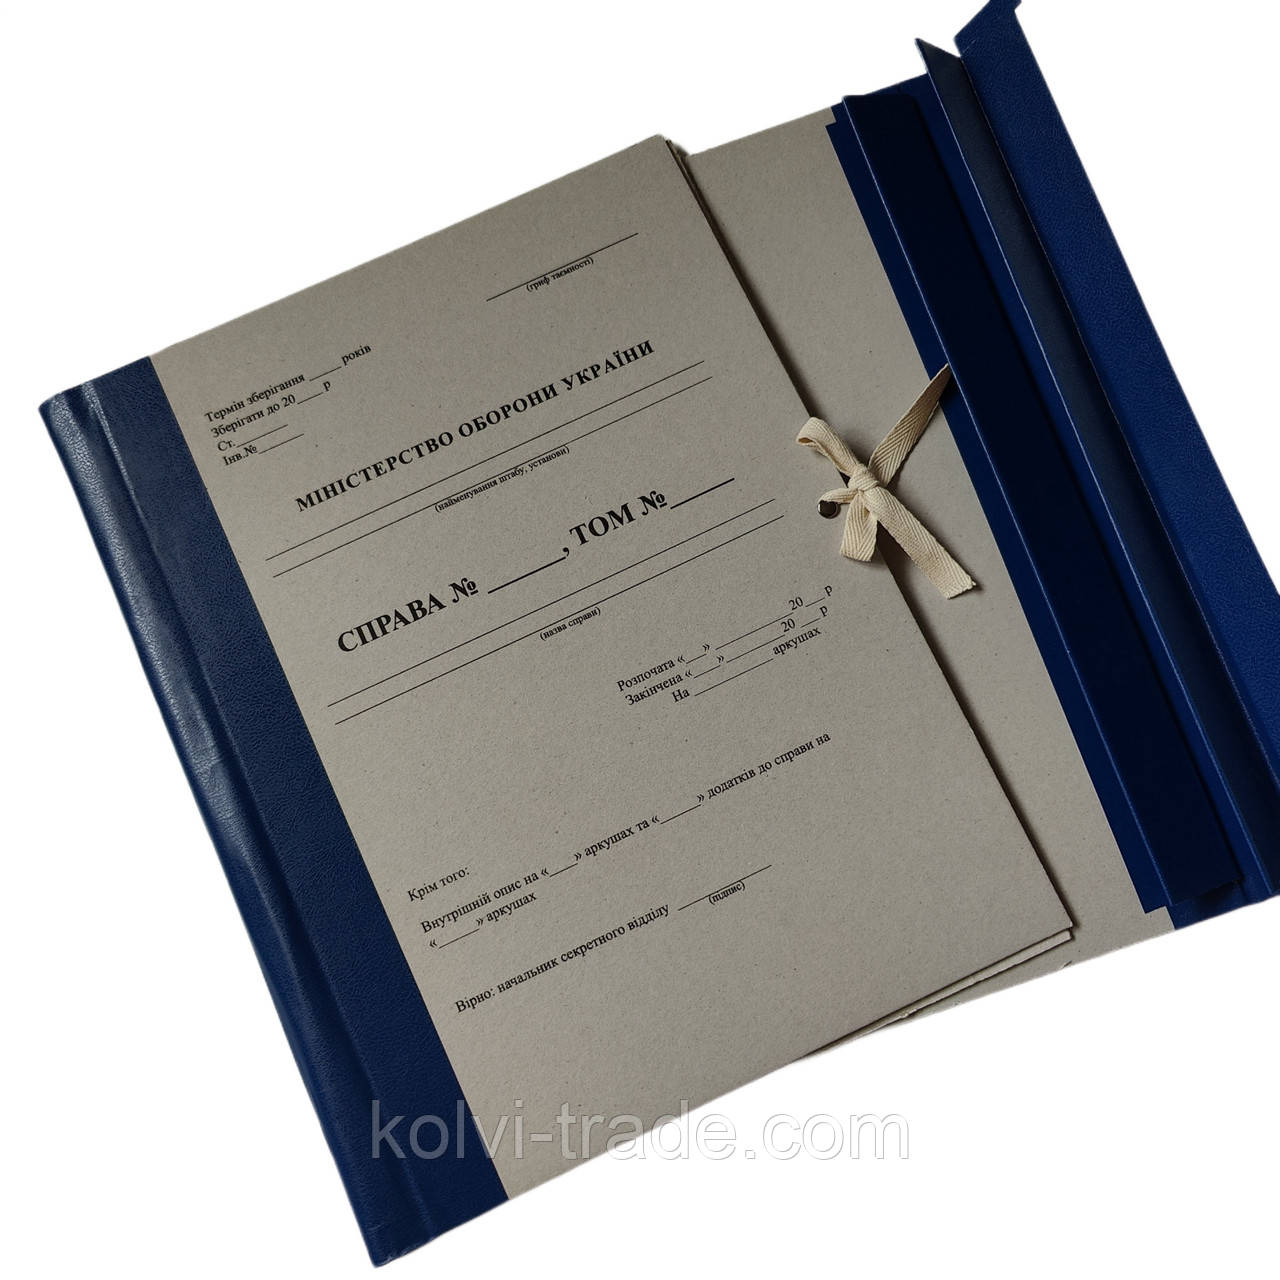 Папка архівна на зав'язках з титулкою Міністерство оборони України 30 мм